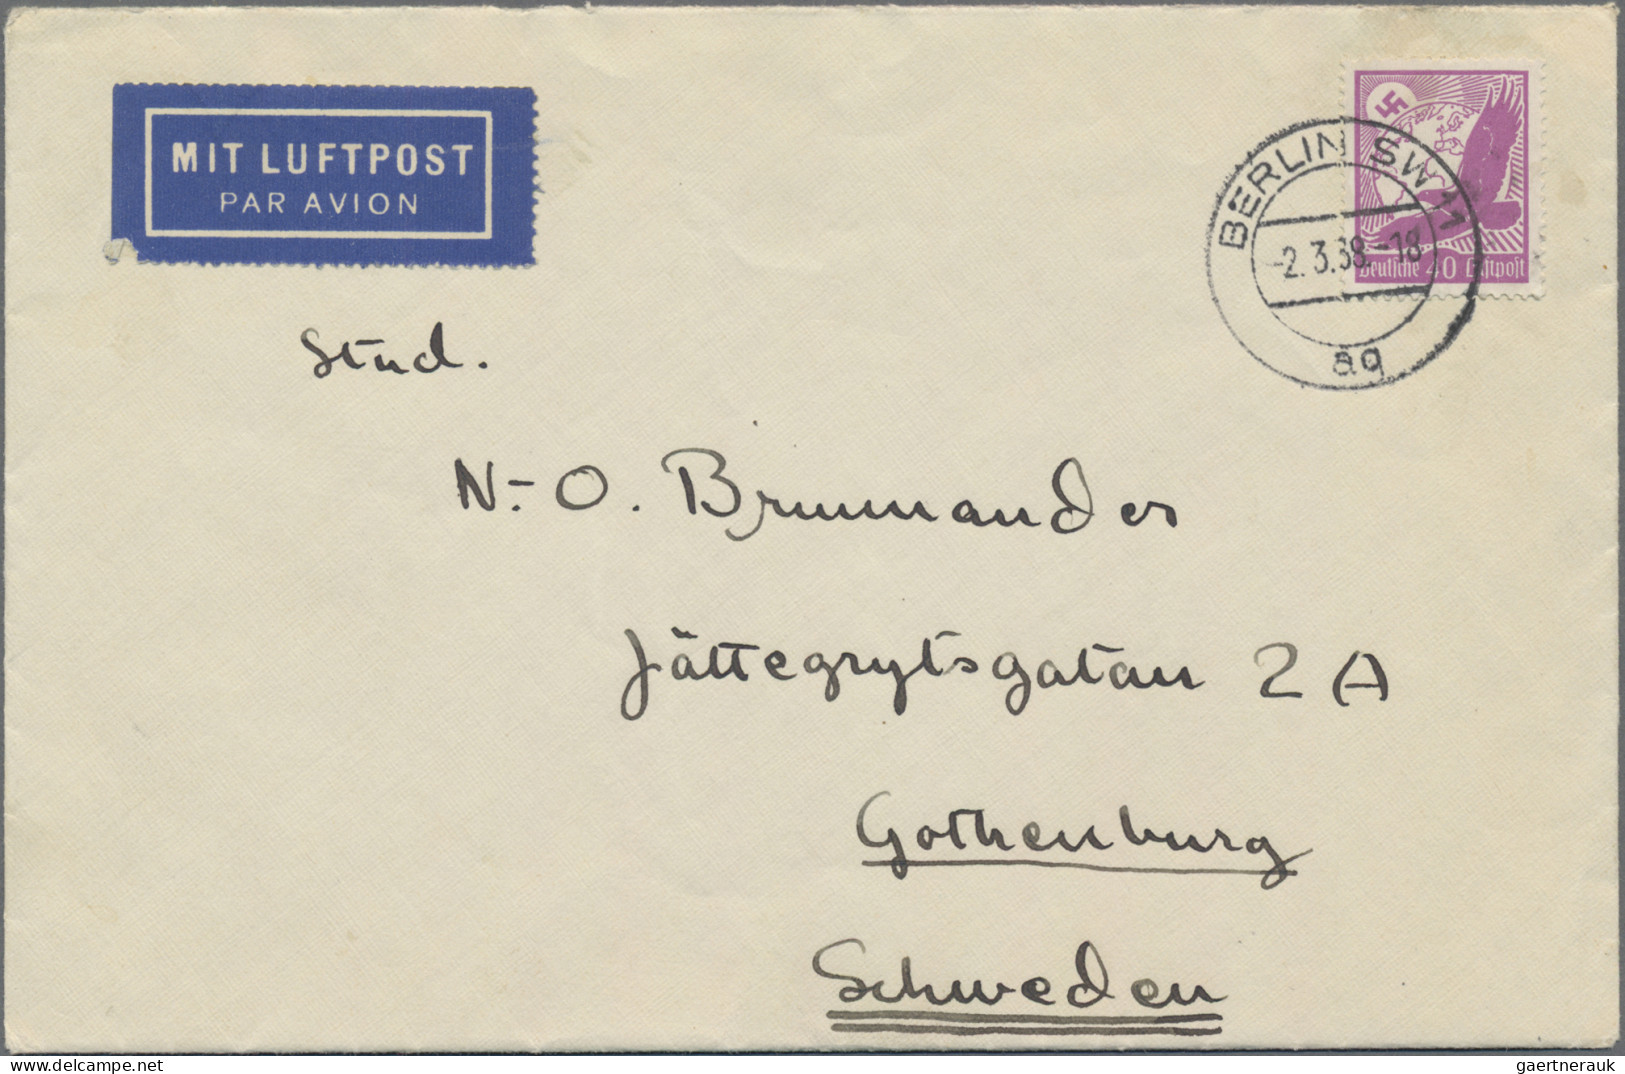 Deutsches Reich: 1928/1942 (ca.), Partie von 14 Luftpost-Belegen meist ins Ausla